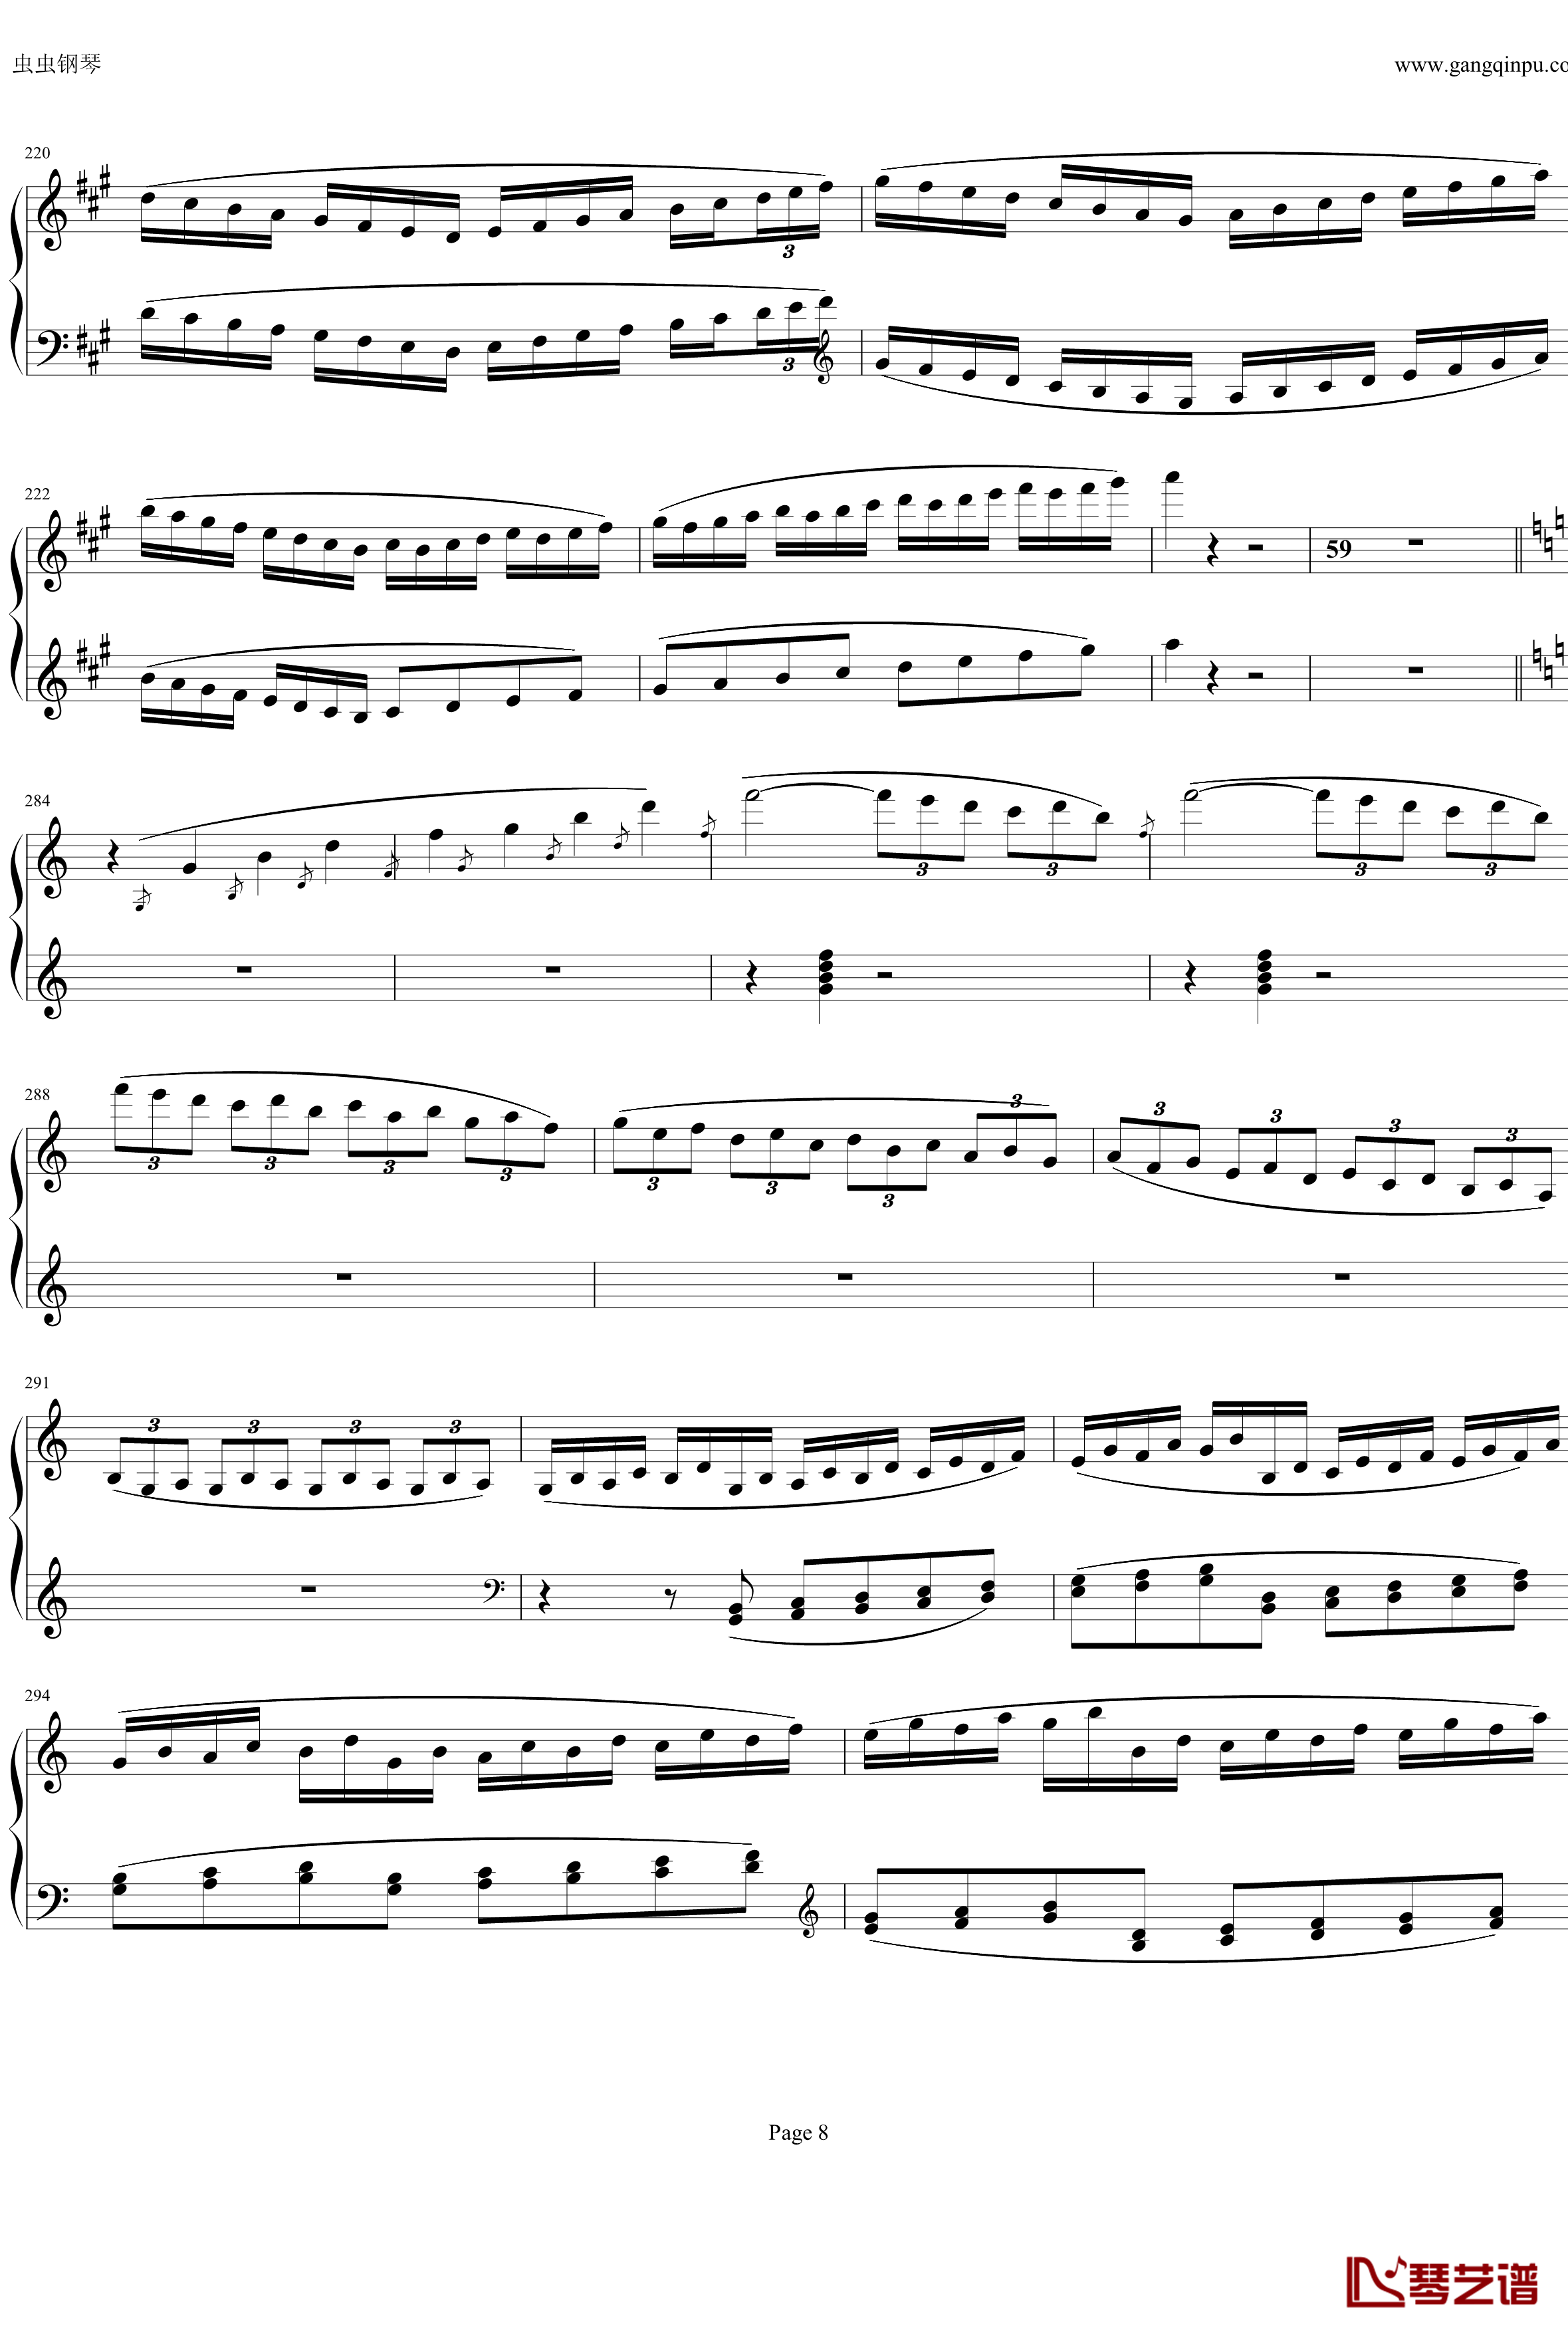 钢琴协奏曲Op61第一乐章钢琴谱-贝多芬-beethoven8